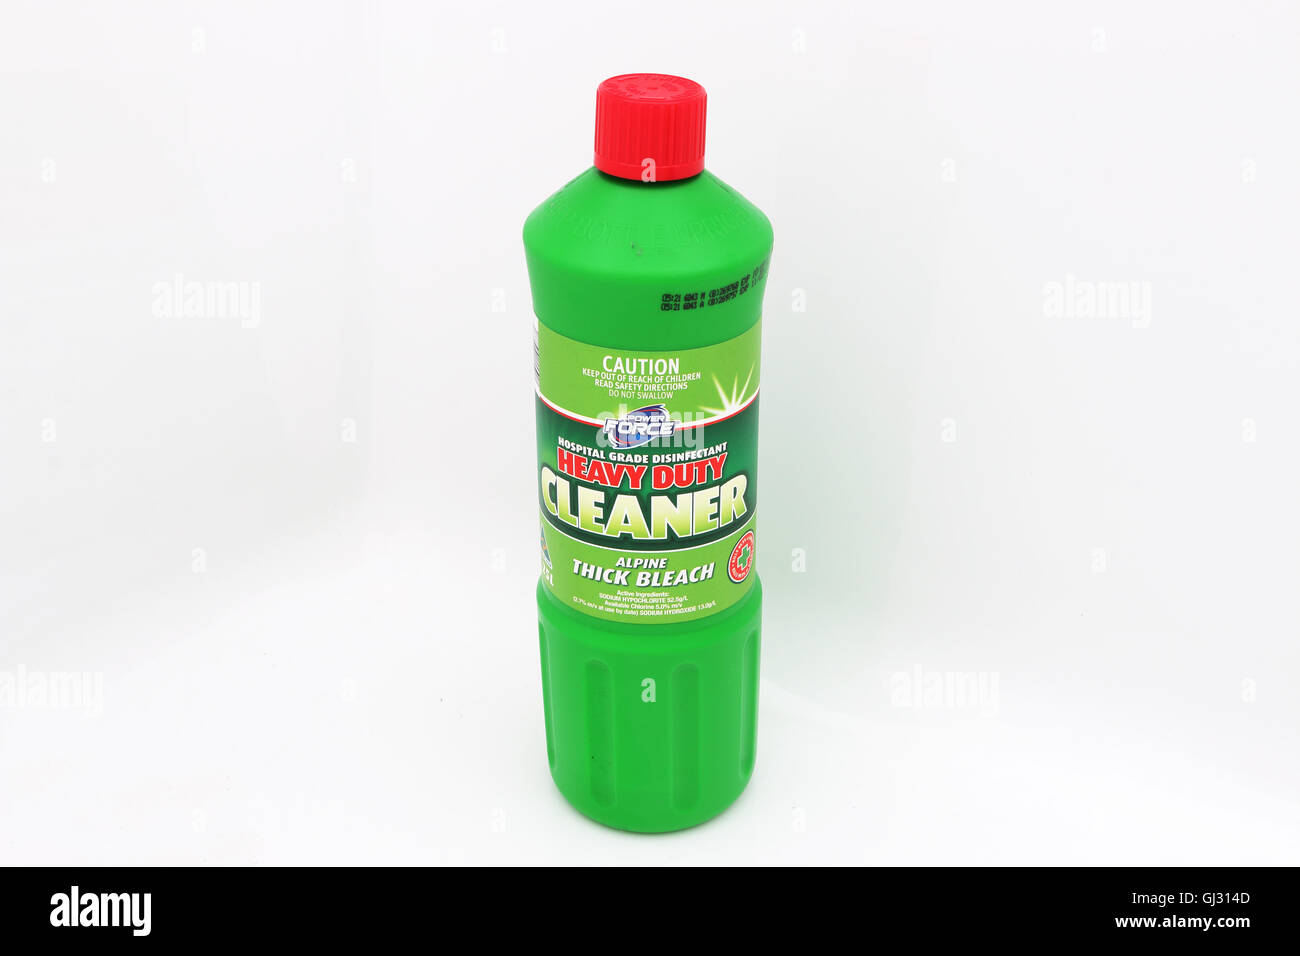 Aldi Australia producto de uso doméstico, lejía en botella de plástico verde contra el fondo blanco. Foto de stock